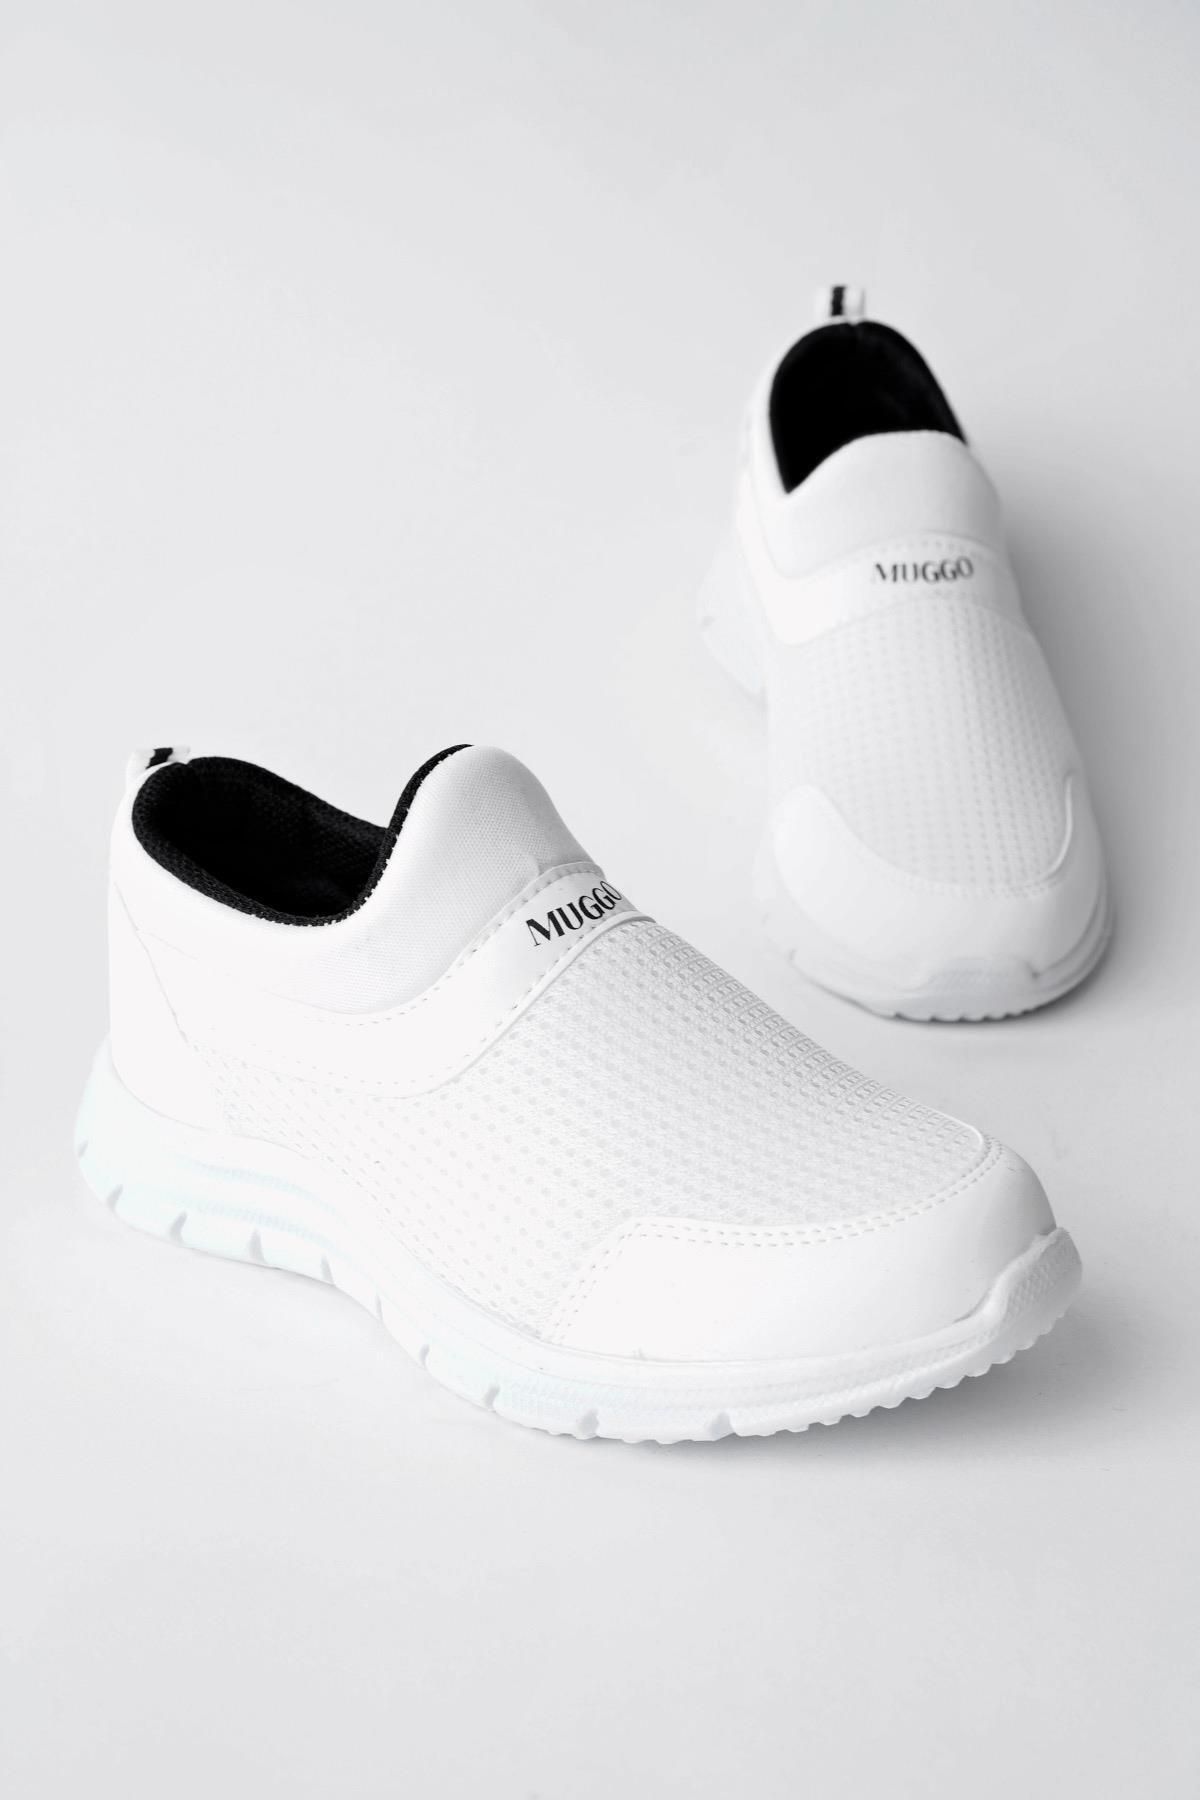 Muggo Tedy Garantili Unisex Çocuk Bağcıksız Rahat Esnek Günlük Sneaker Spor Ayakkabı